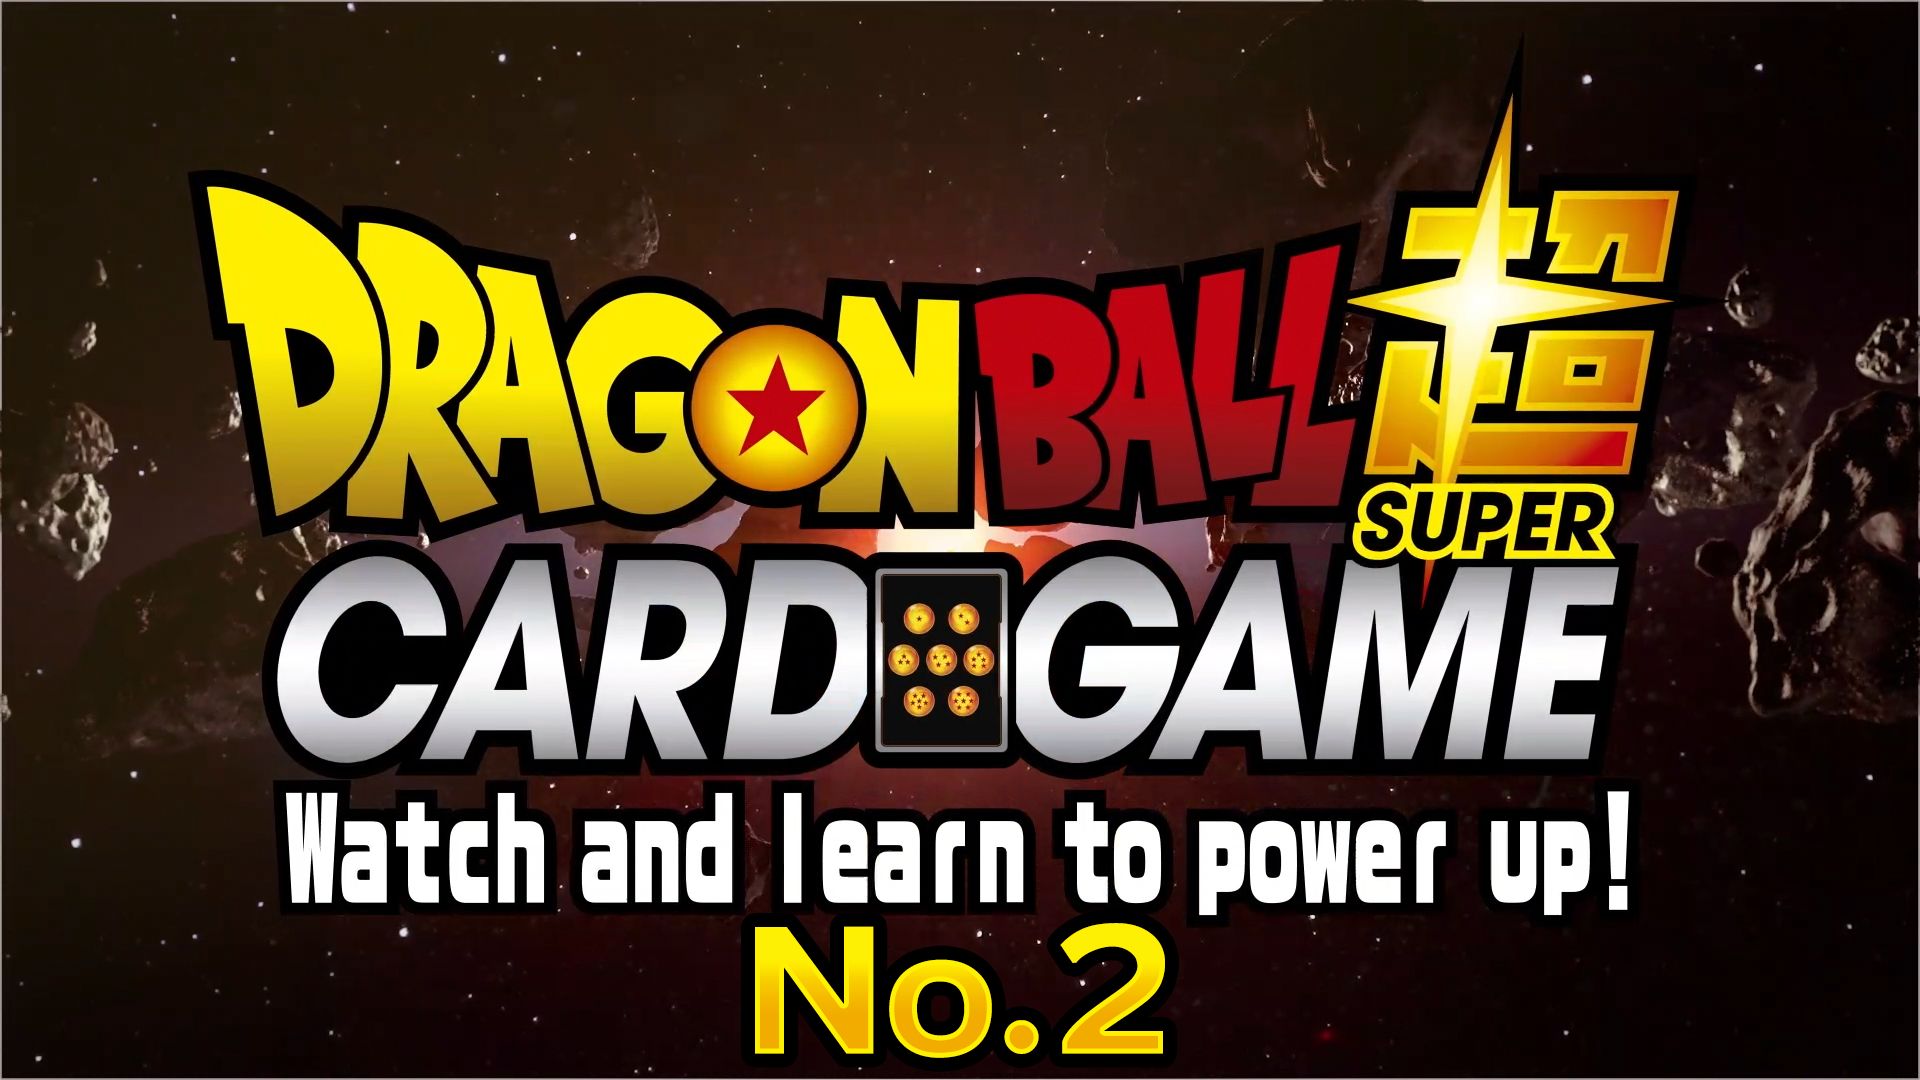 Dragon Ball Super Card Game: Regardez et apprenez à vous mettre sous tension ! N ° 2